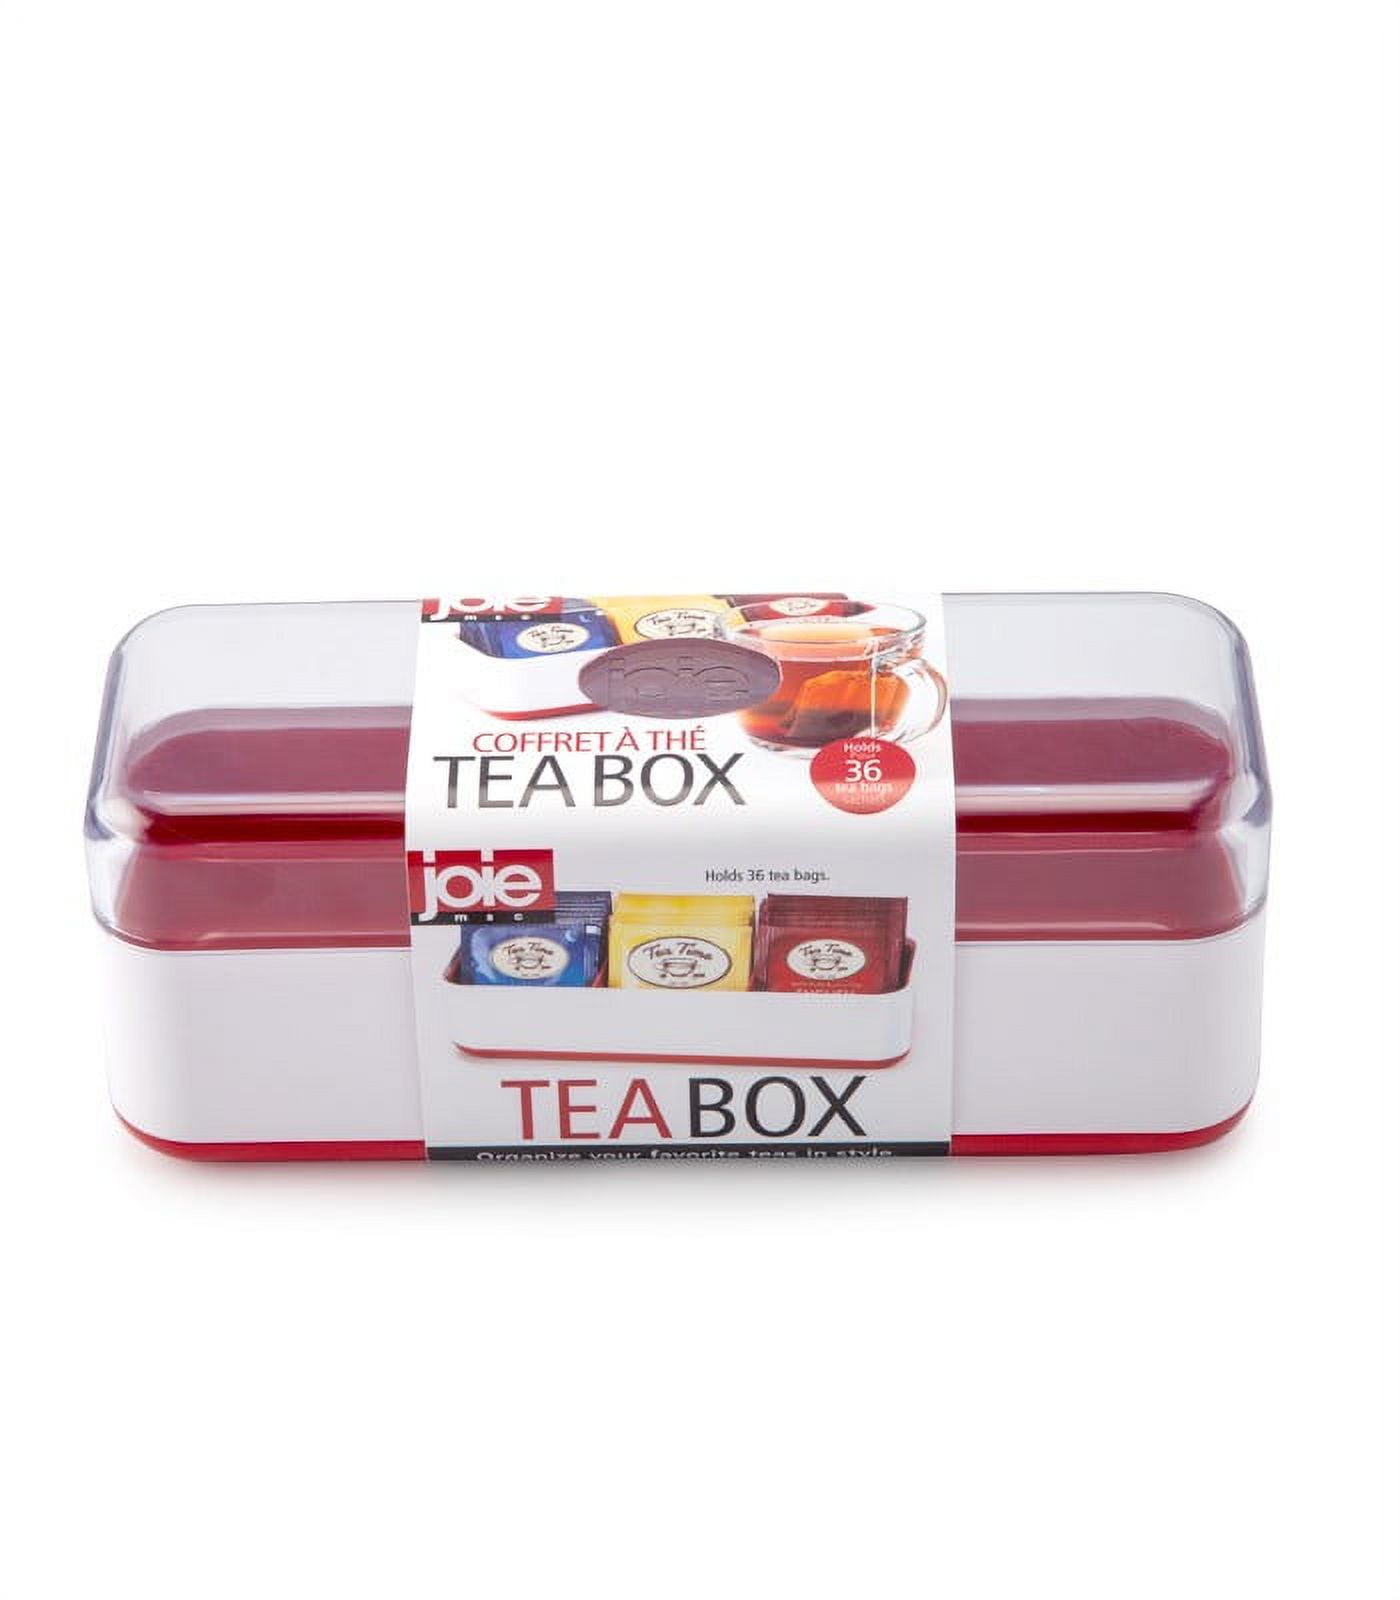 Coffret à Thé, Tea Box , Joie.